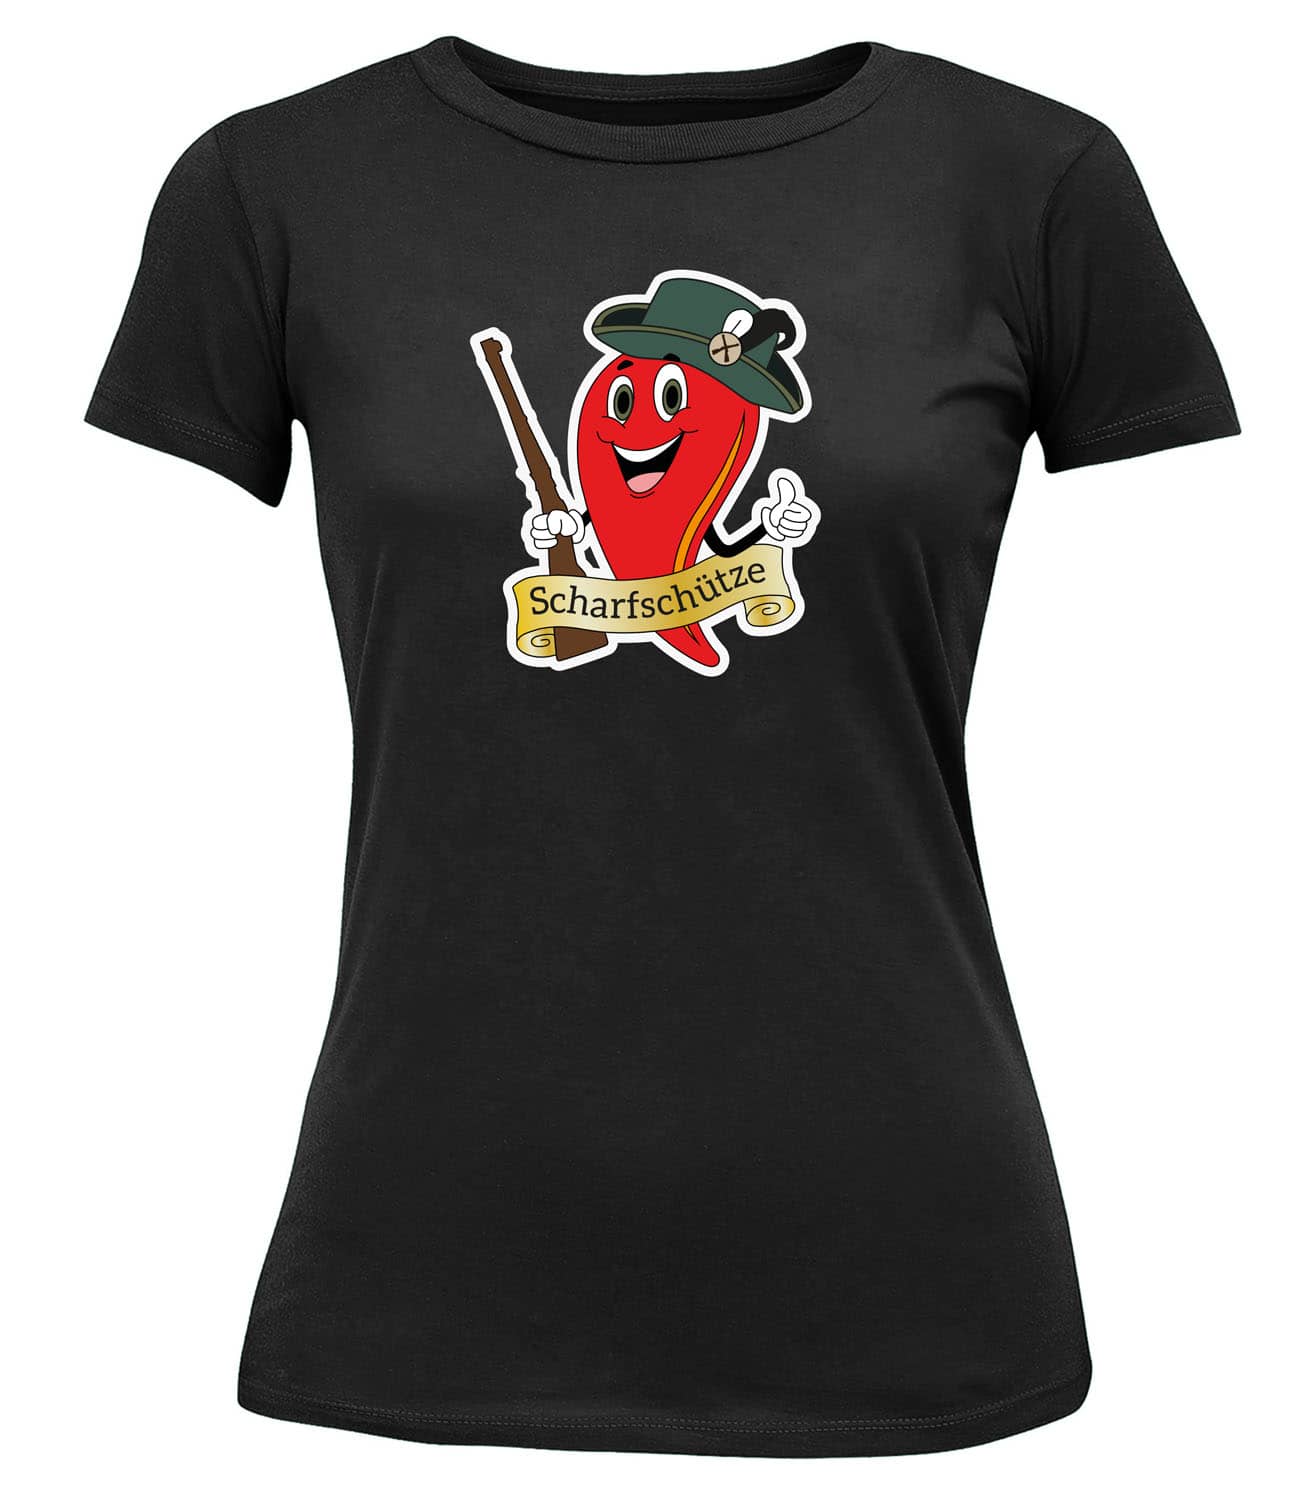 T-Shirt "Scharfschütze" - Damen